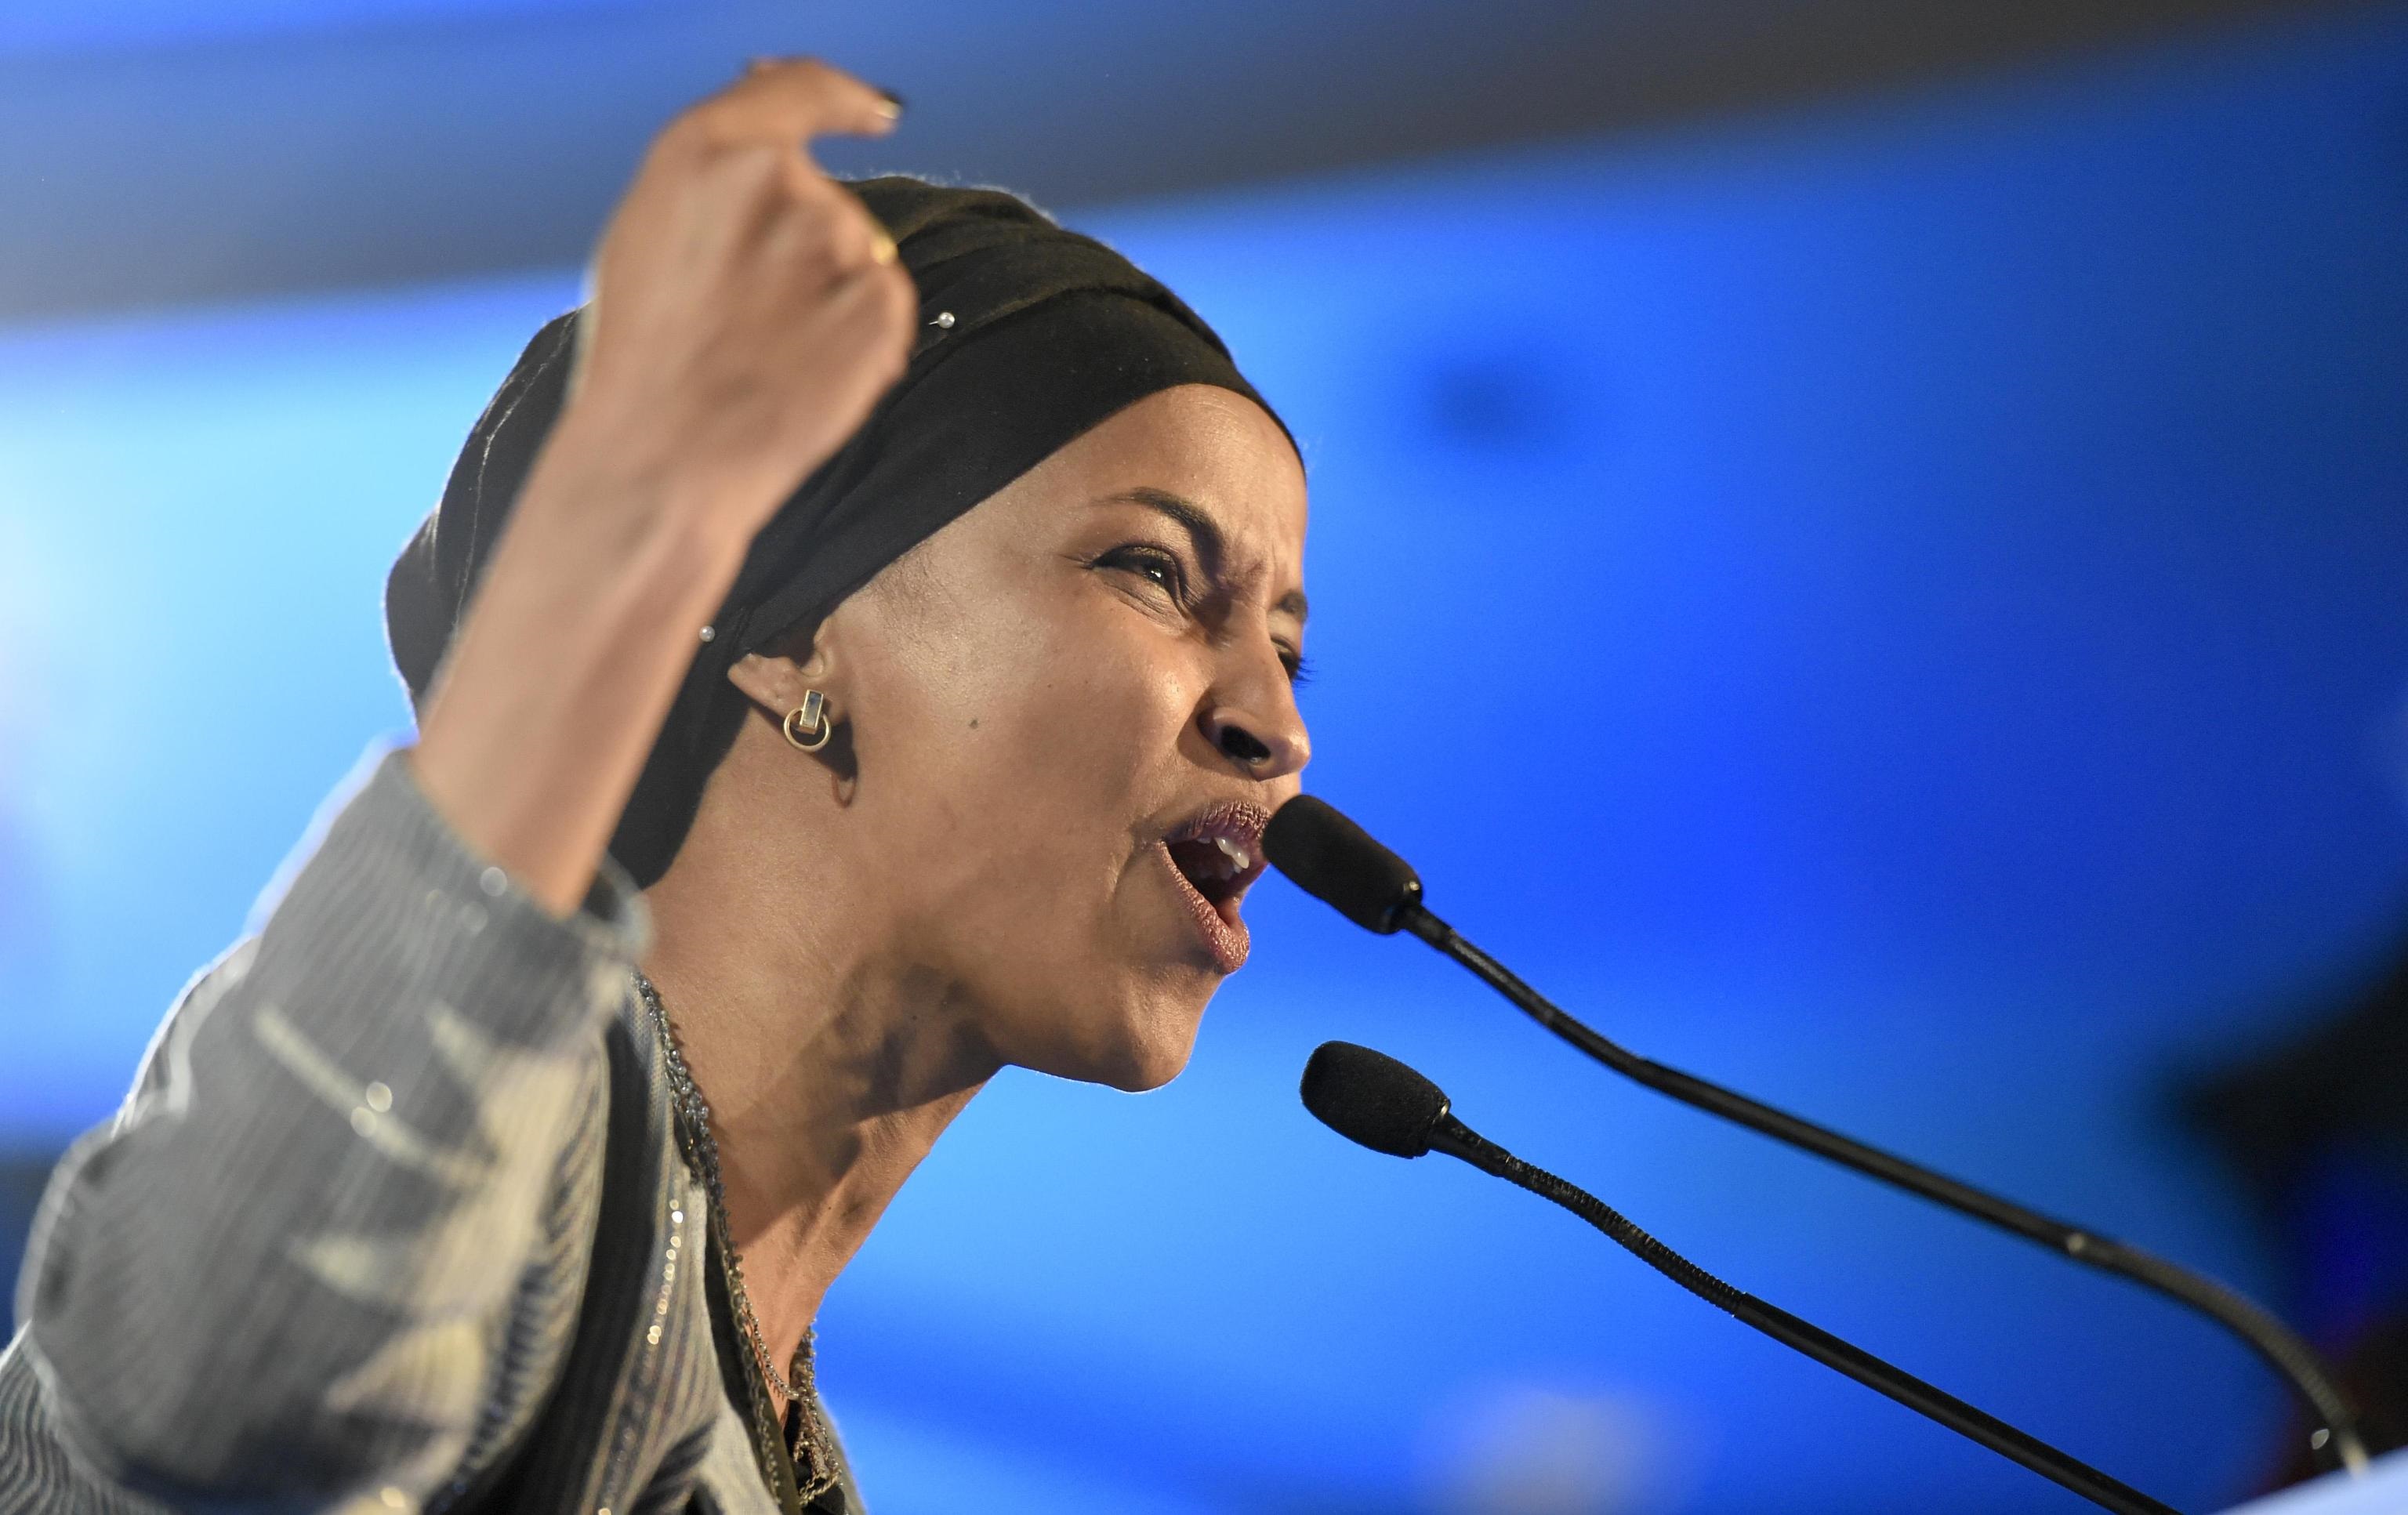 La trentaseienne Ihlam Omar, rifugiata somala, nel discorso dopo la vittoria: la nuova deputata democratica sarà la prima a indossare l'hijab al Campidoglio